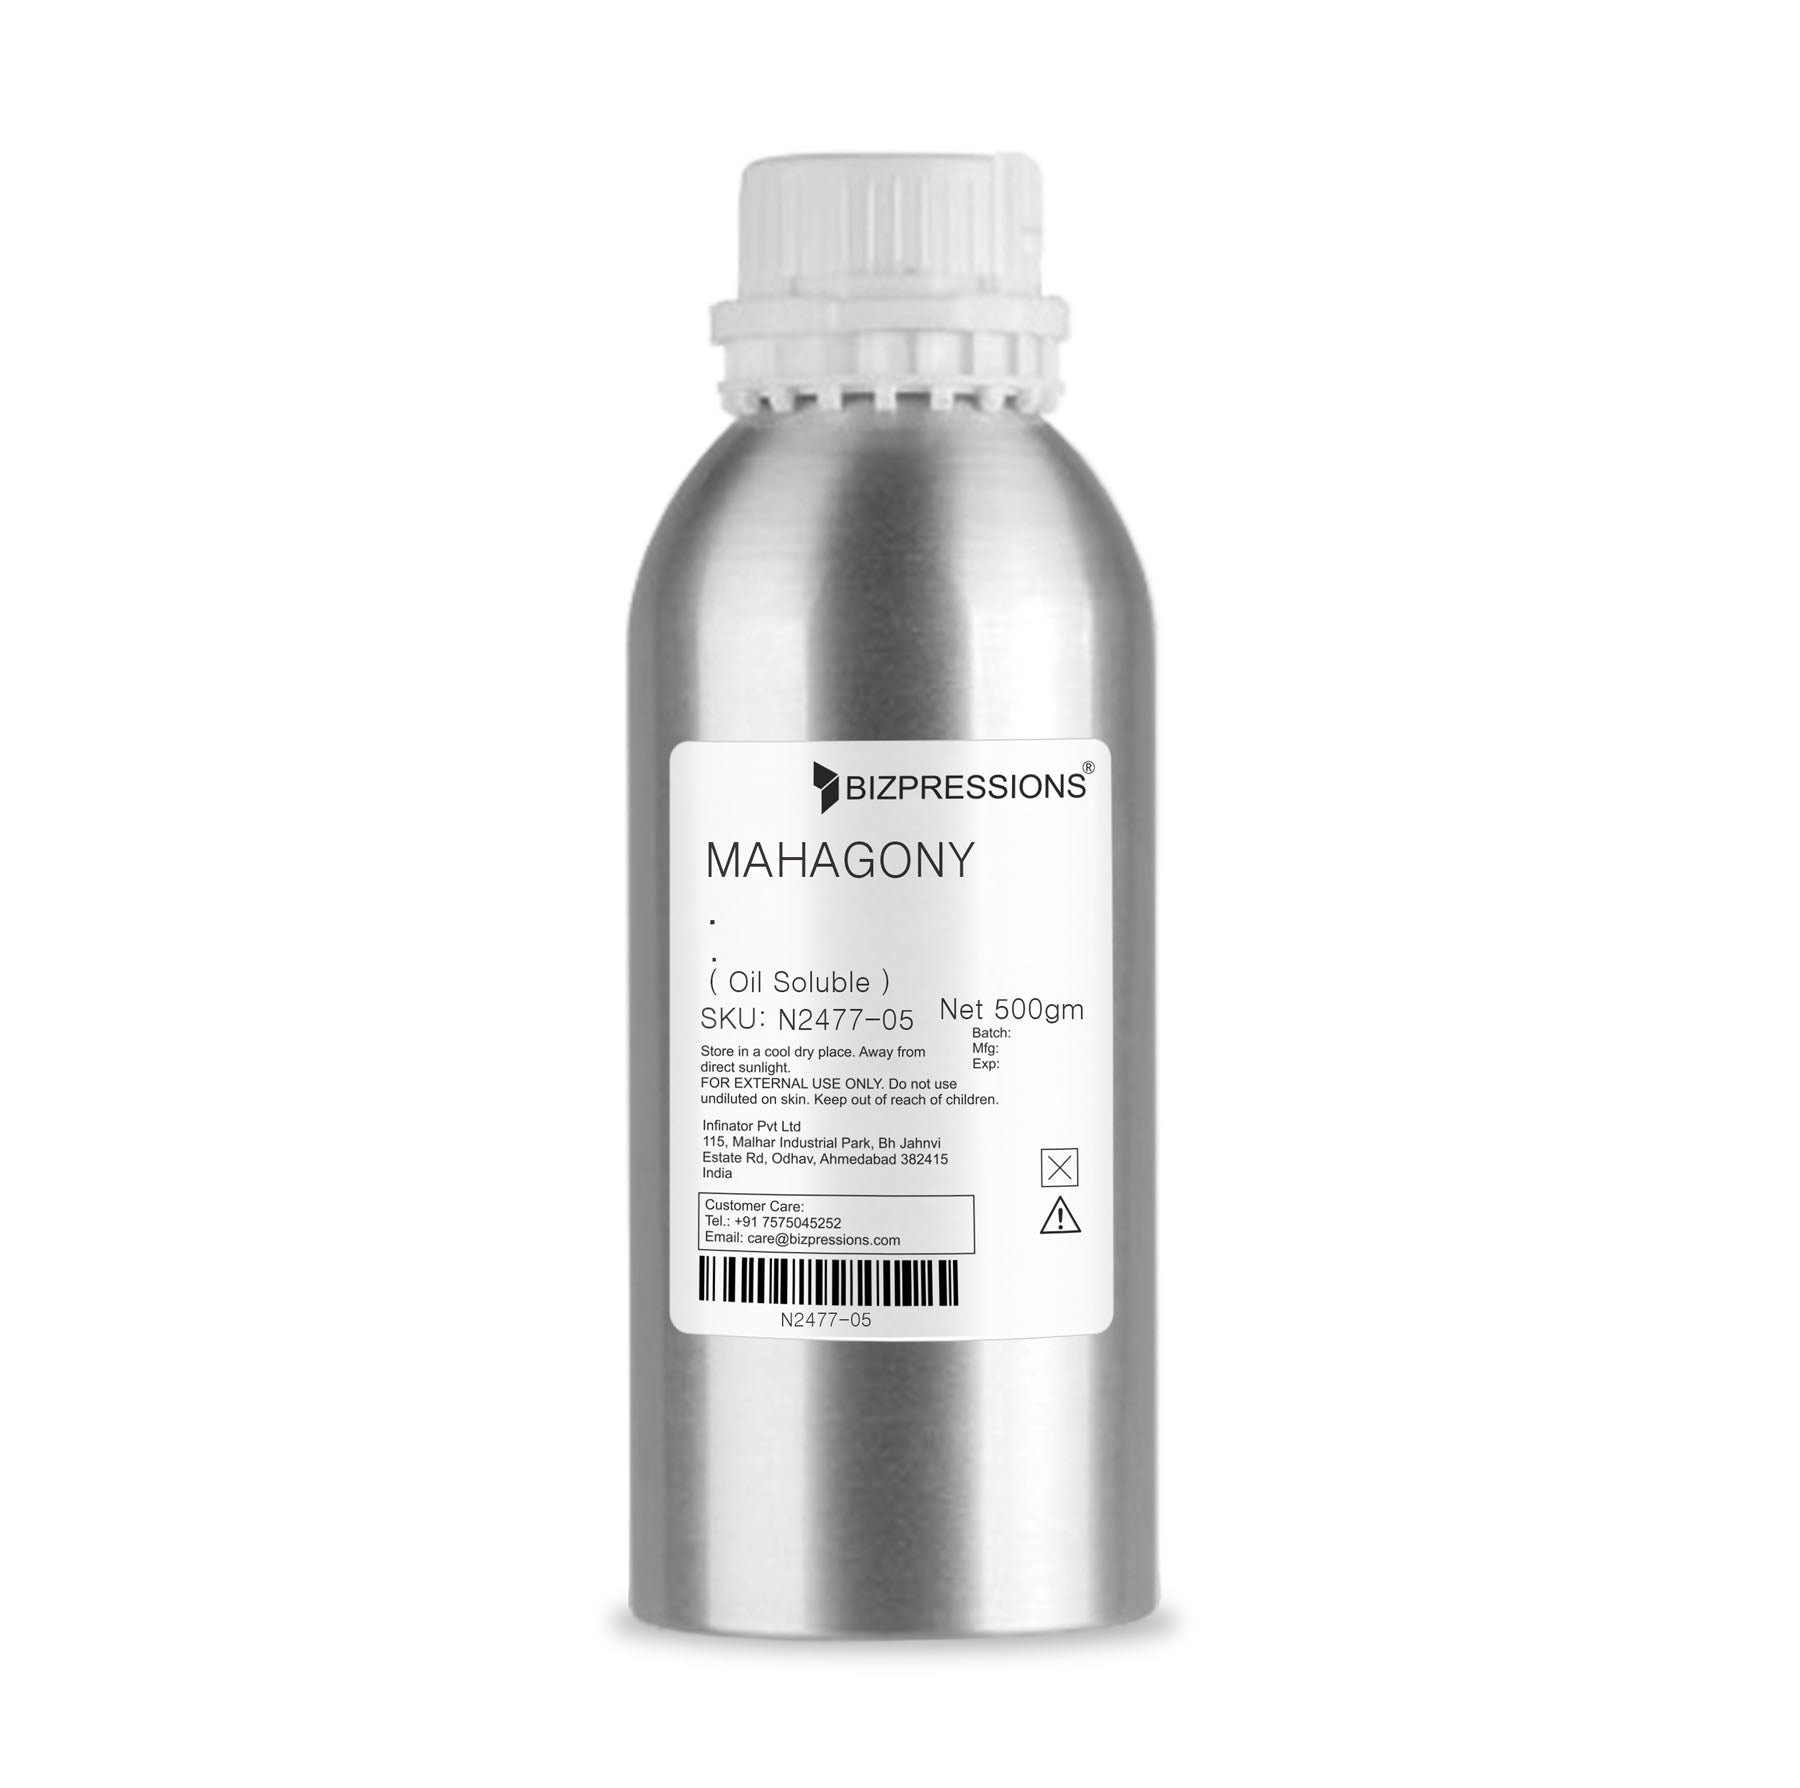 MAHAGONY - Fragrance ( Oil Soluble ) - 500 gm